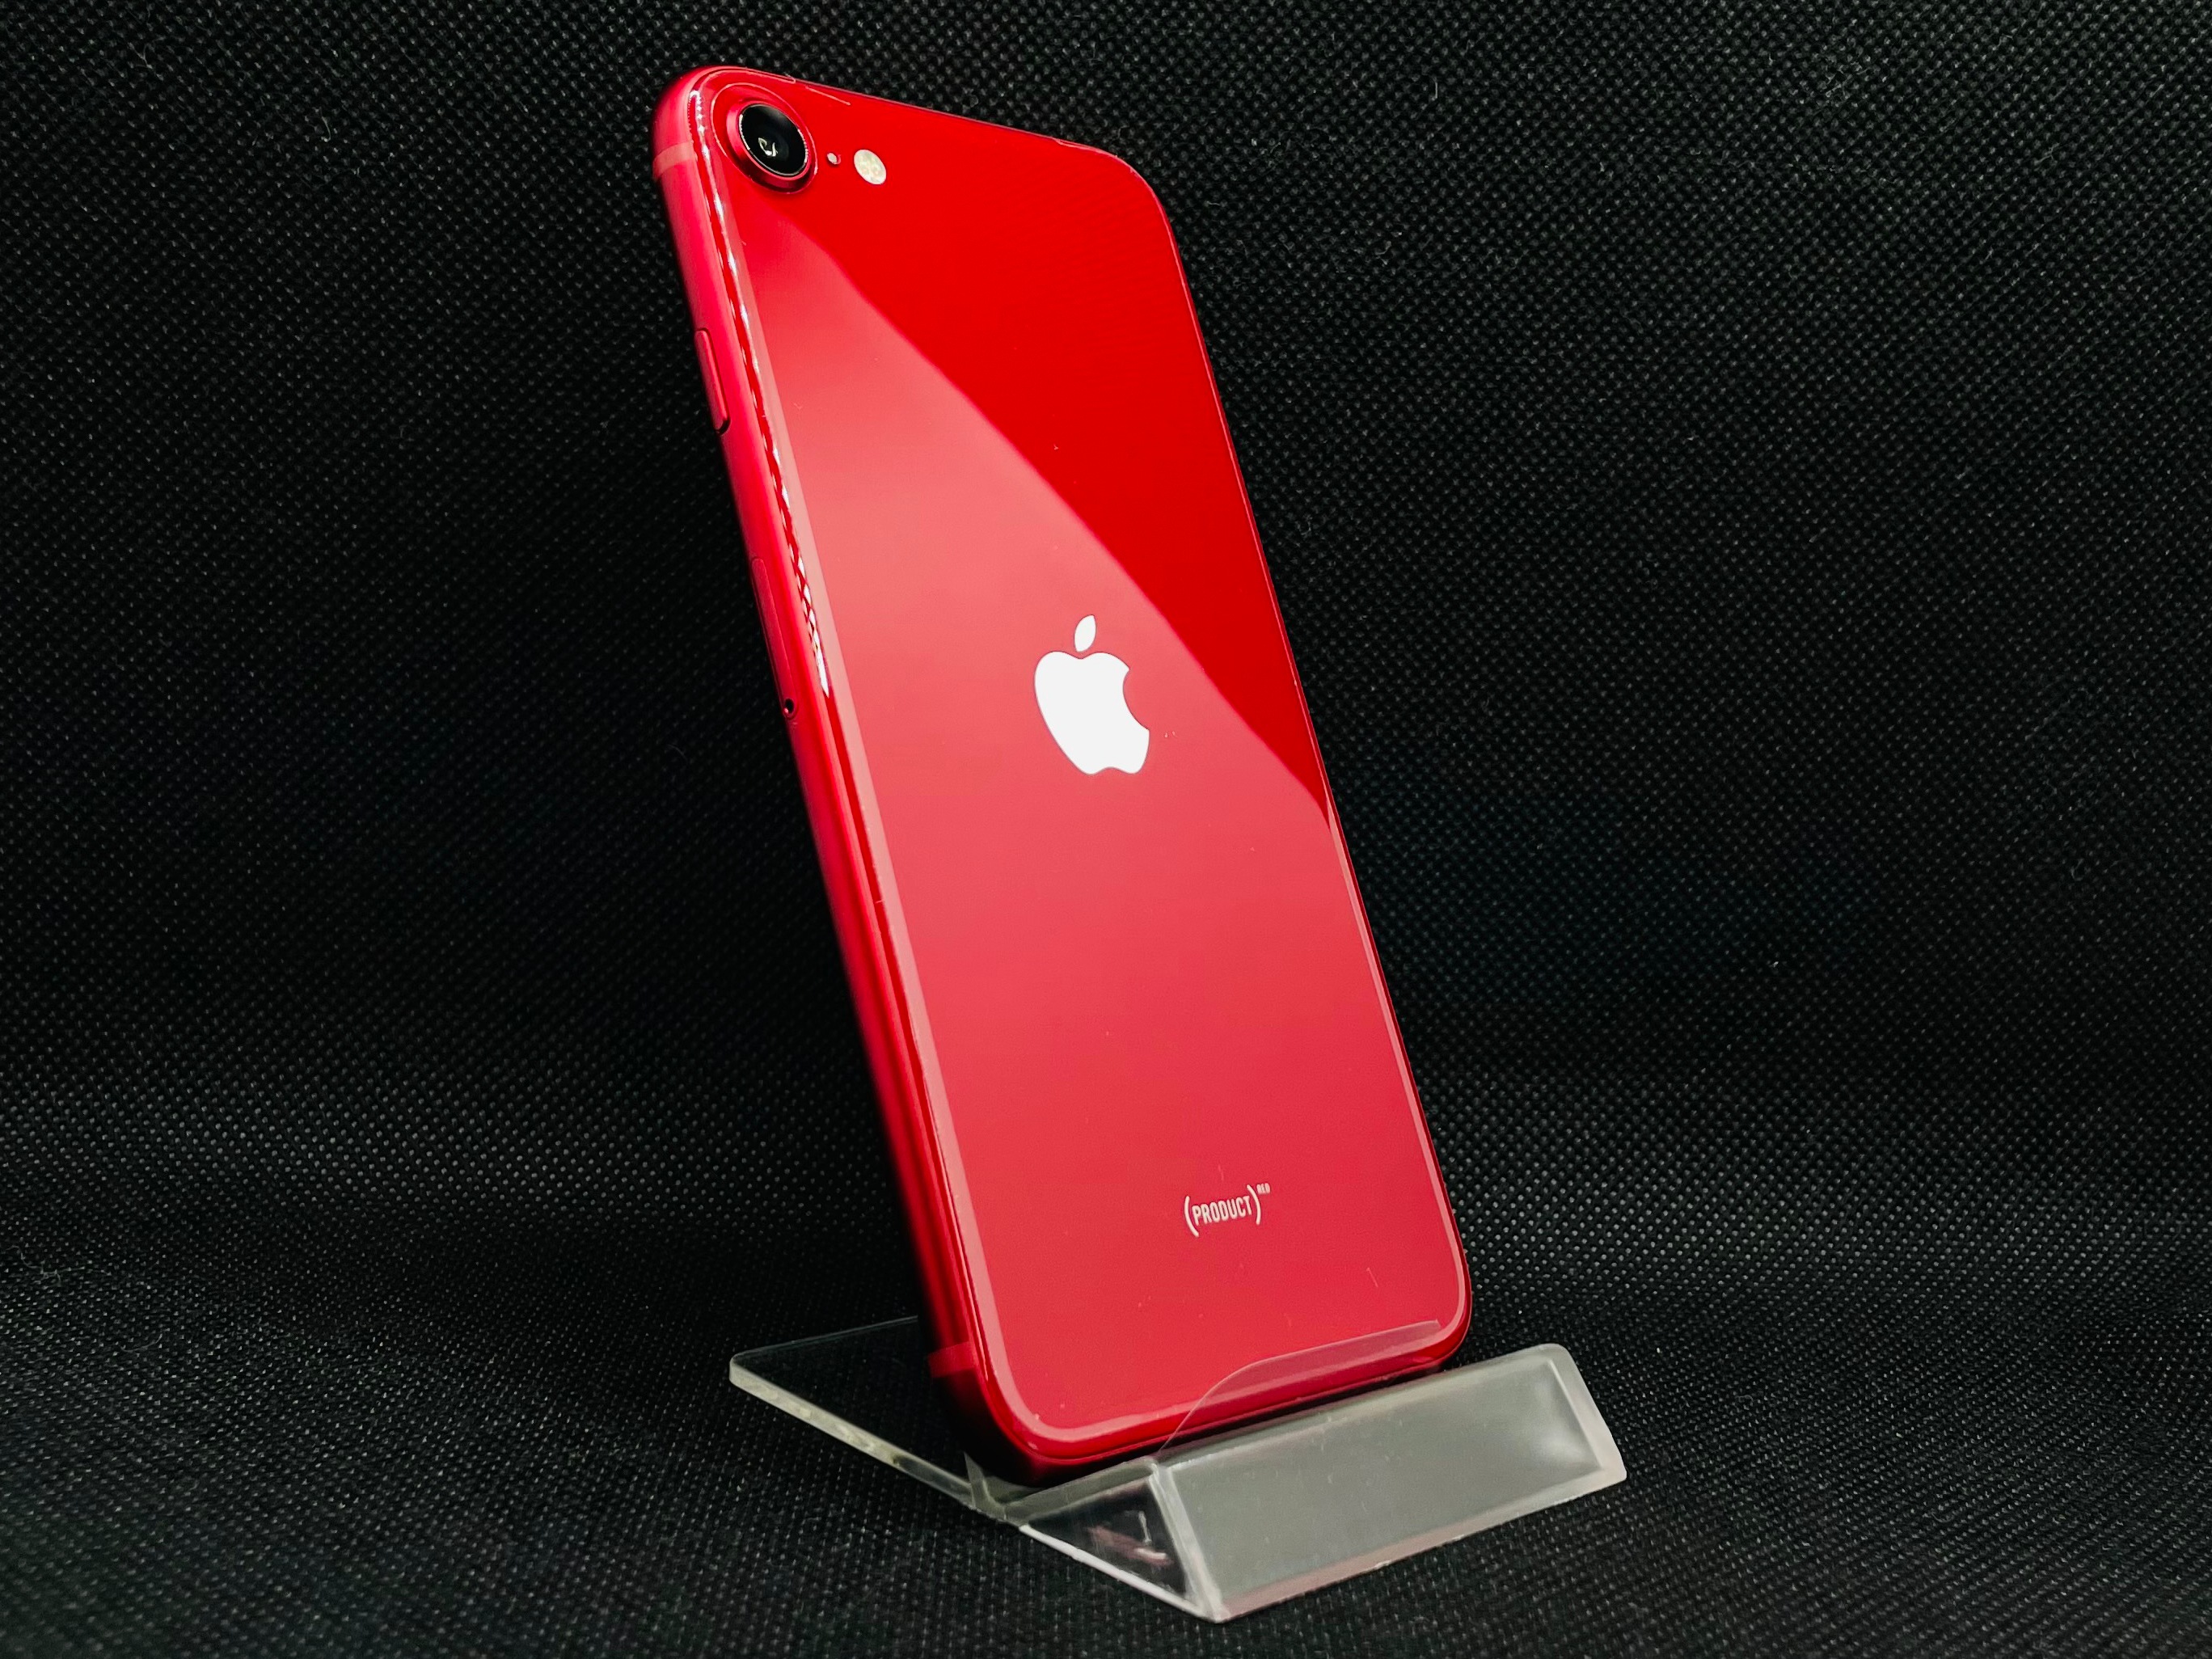 価格.com - iPhone SE (第3世代) (PRODUCT)RED 64GB SIMフリー [レッド 